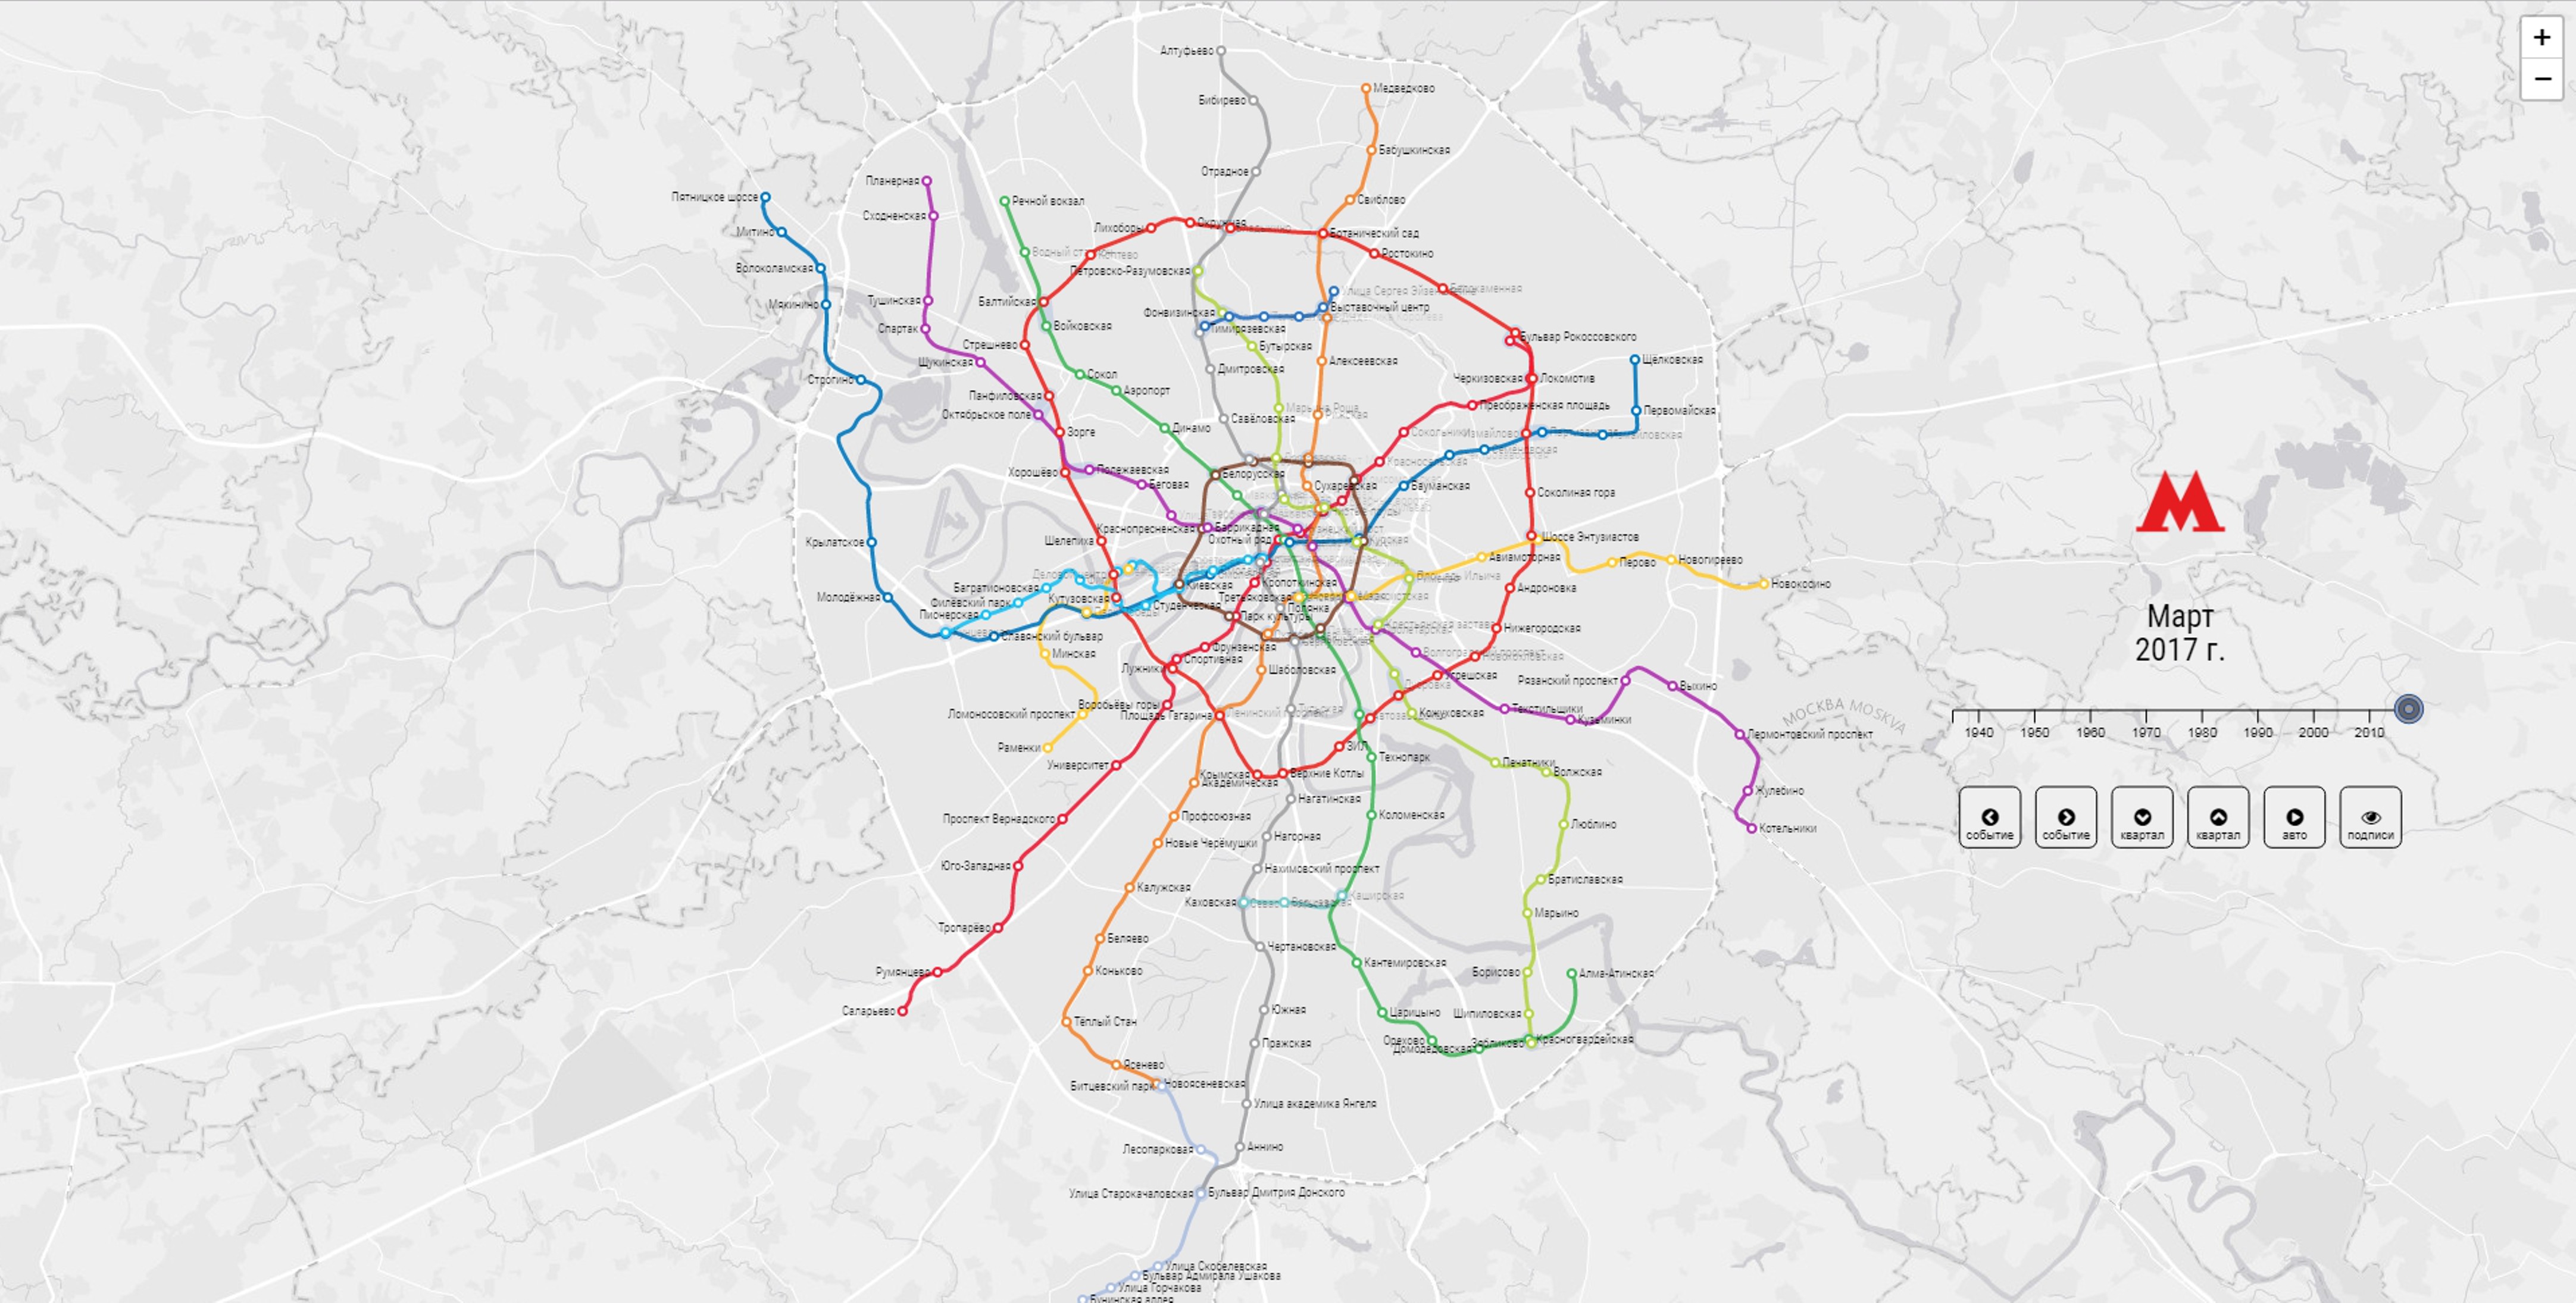 Схема карта метро москвы